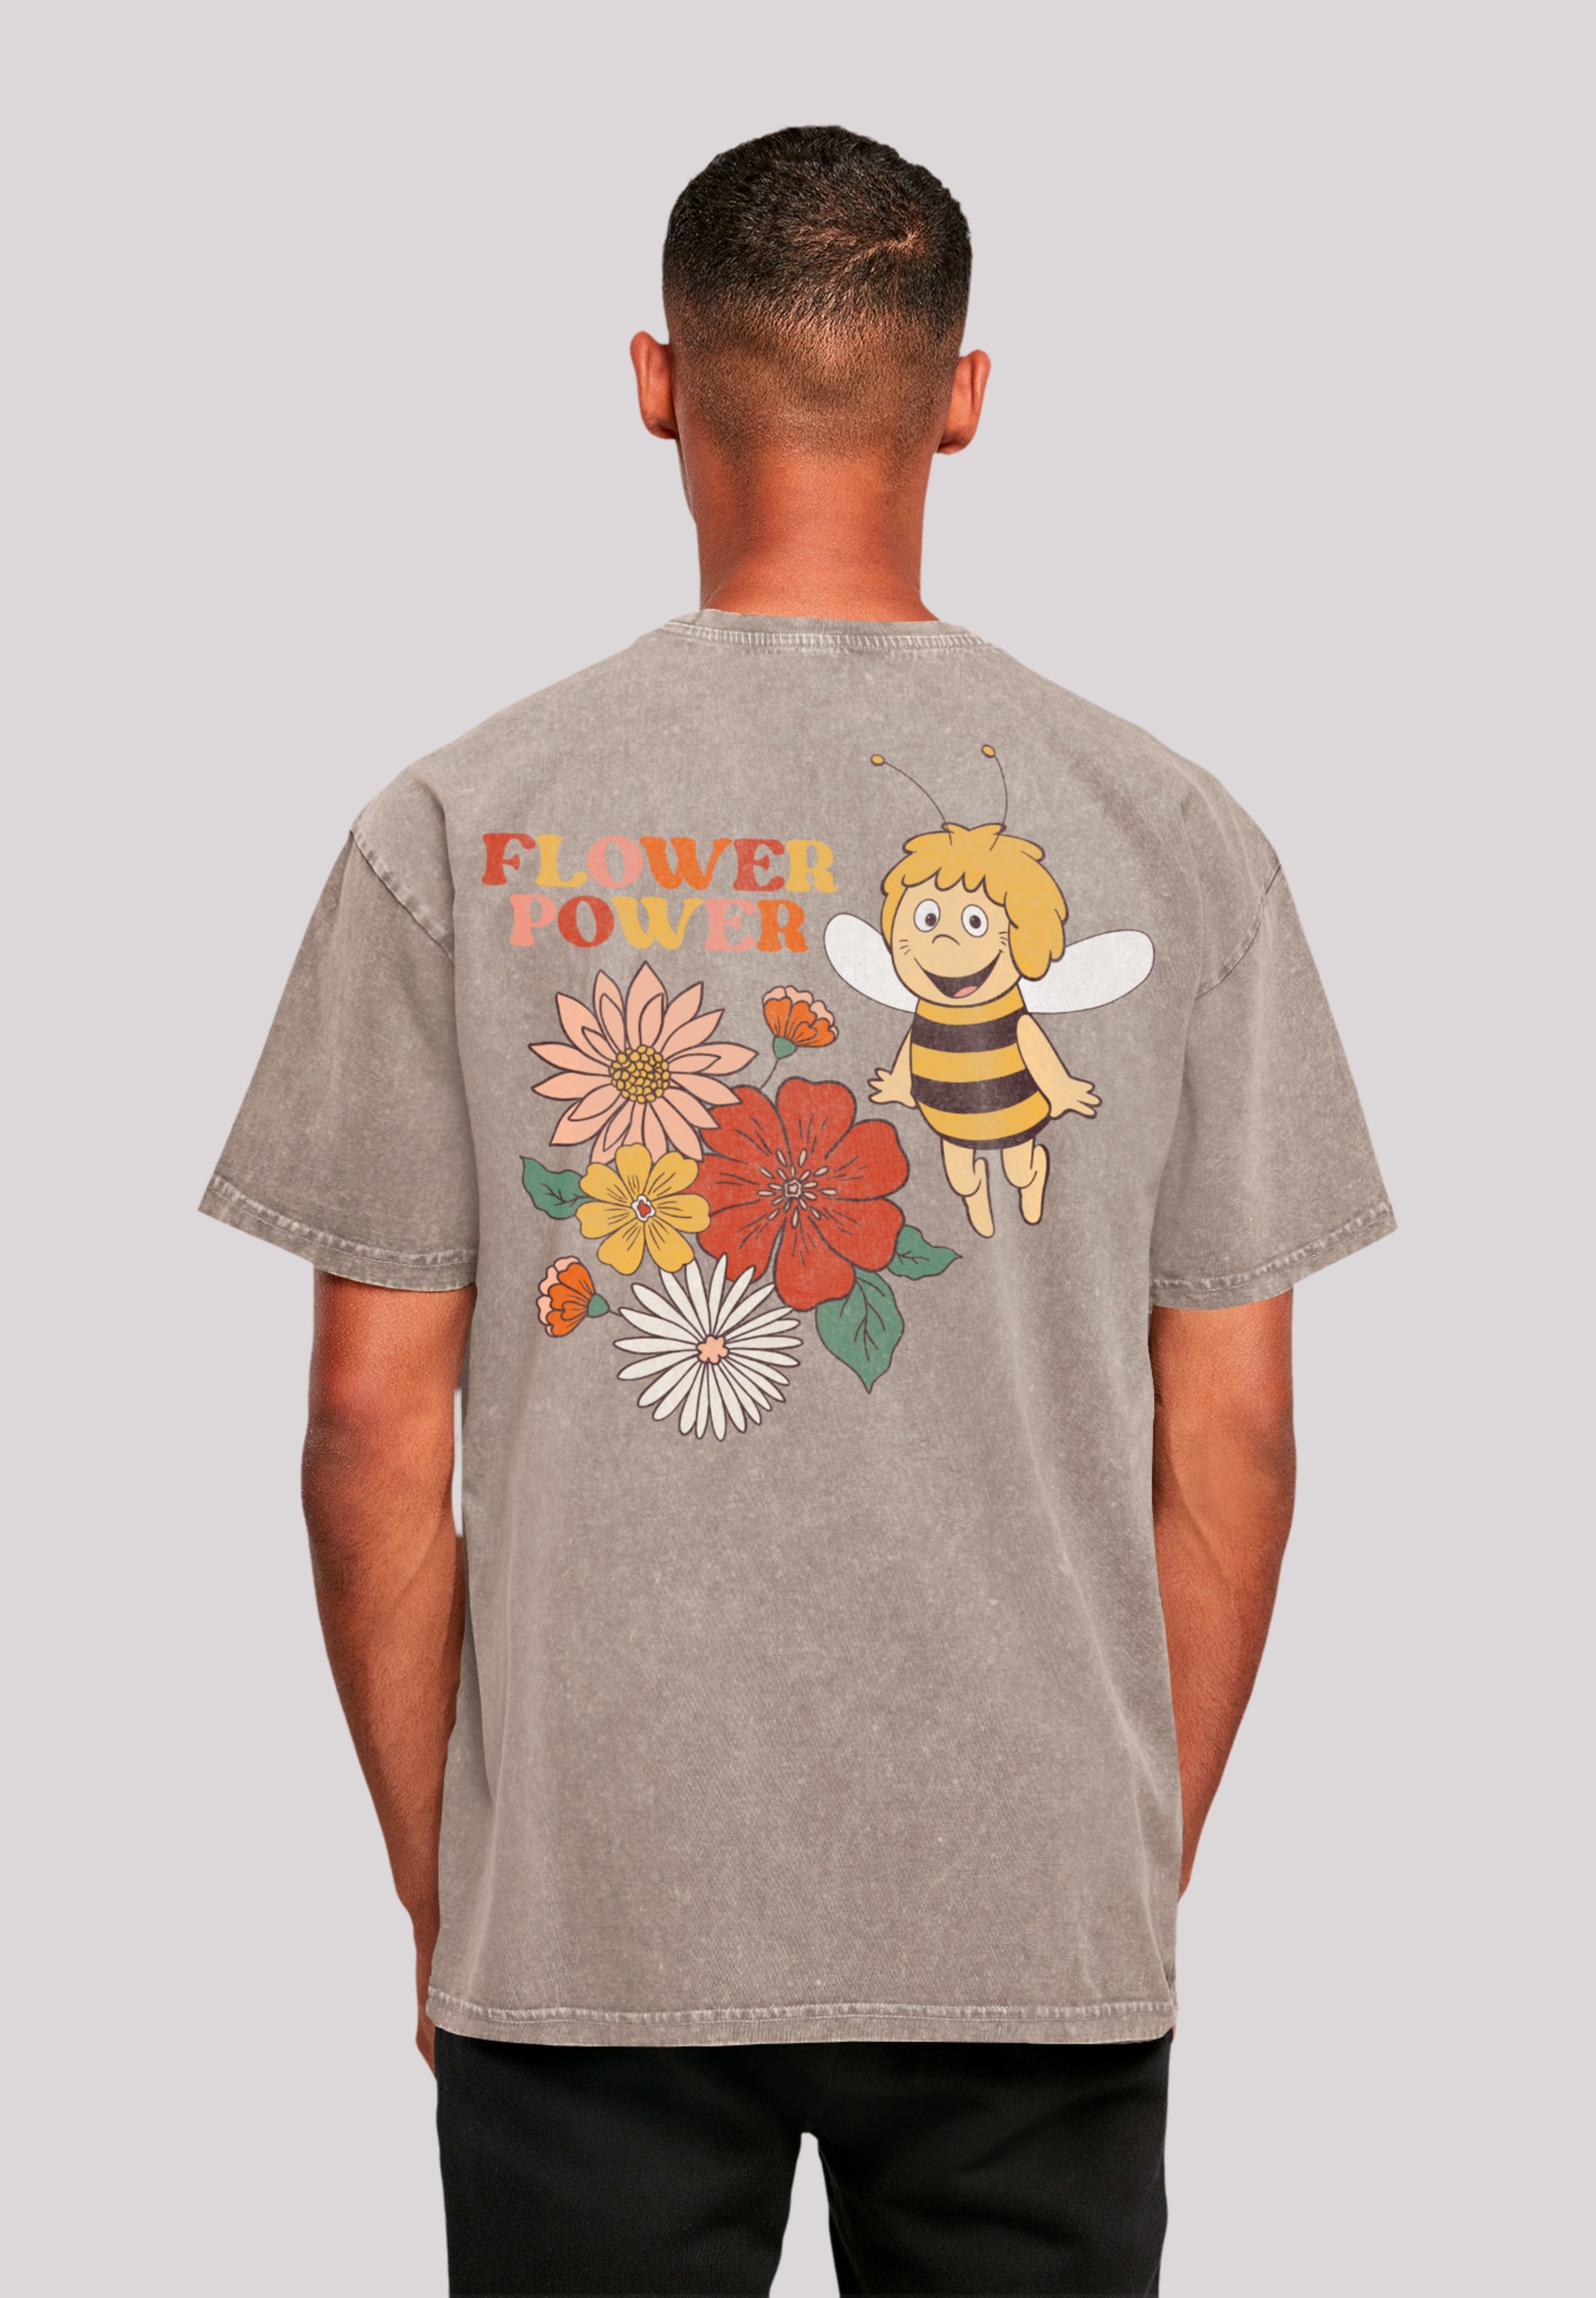 T-Shirt »Die Biene Maja Flower Power Heroes of Childhood«, Nostalgie, Retro, Heroes of...